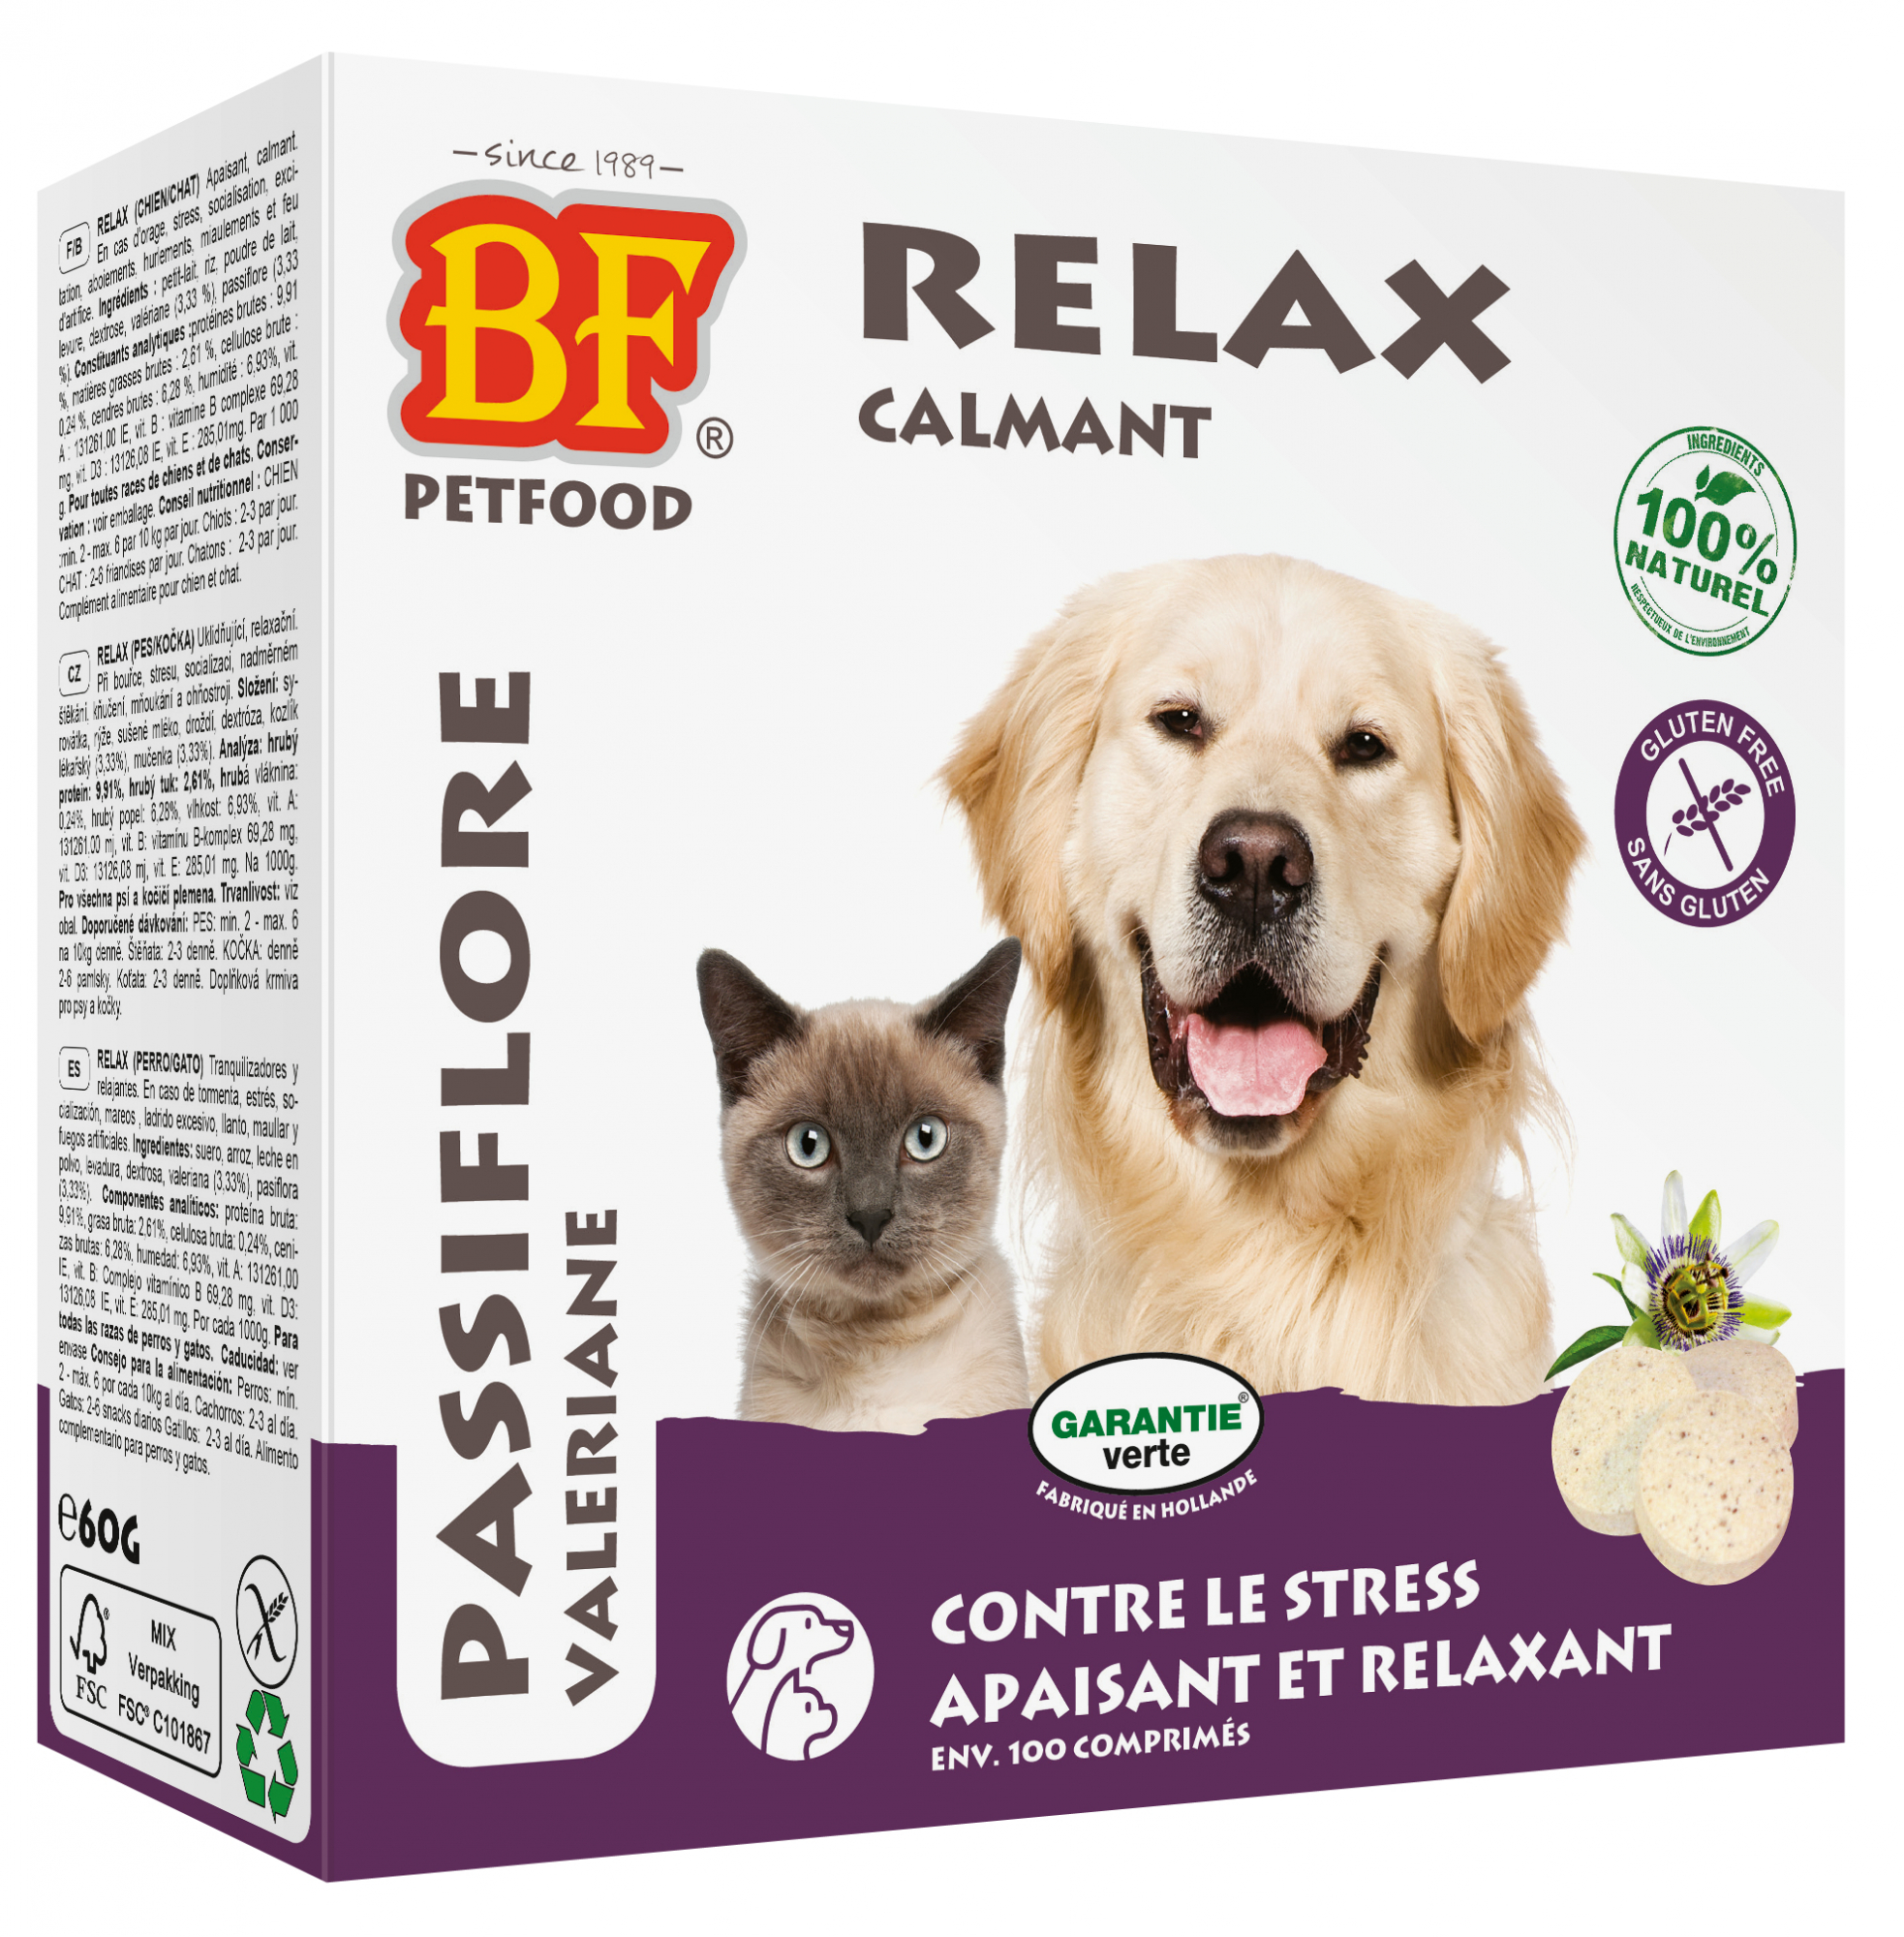 BF PETFOOD - BIOFOOD Comprimidos naturales relajantes para perros y gatos